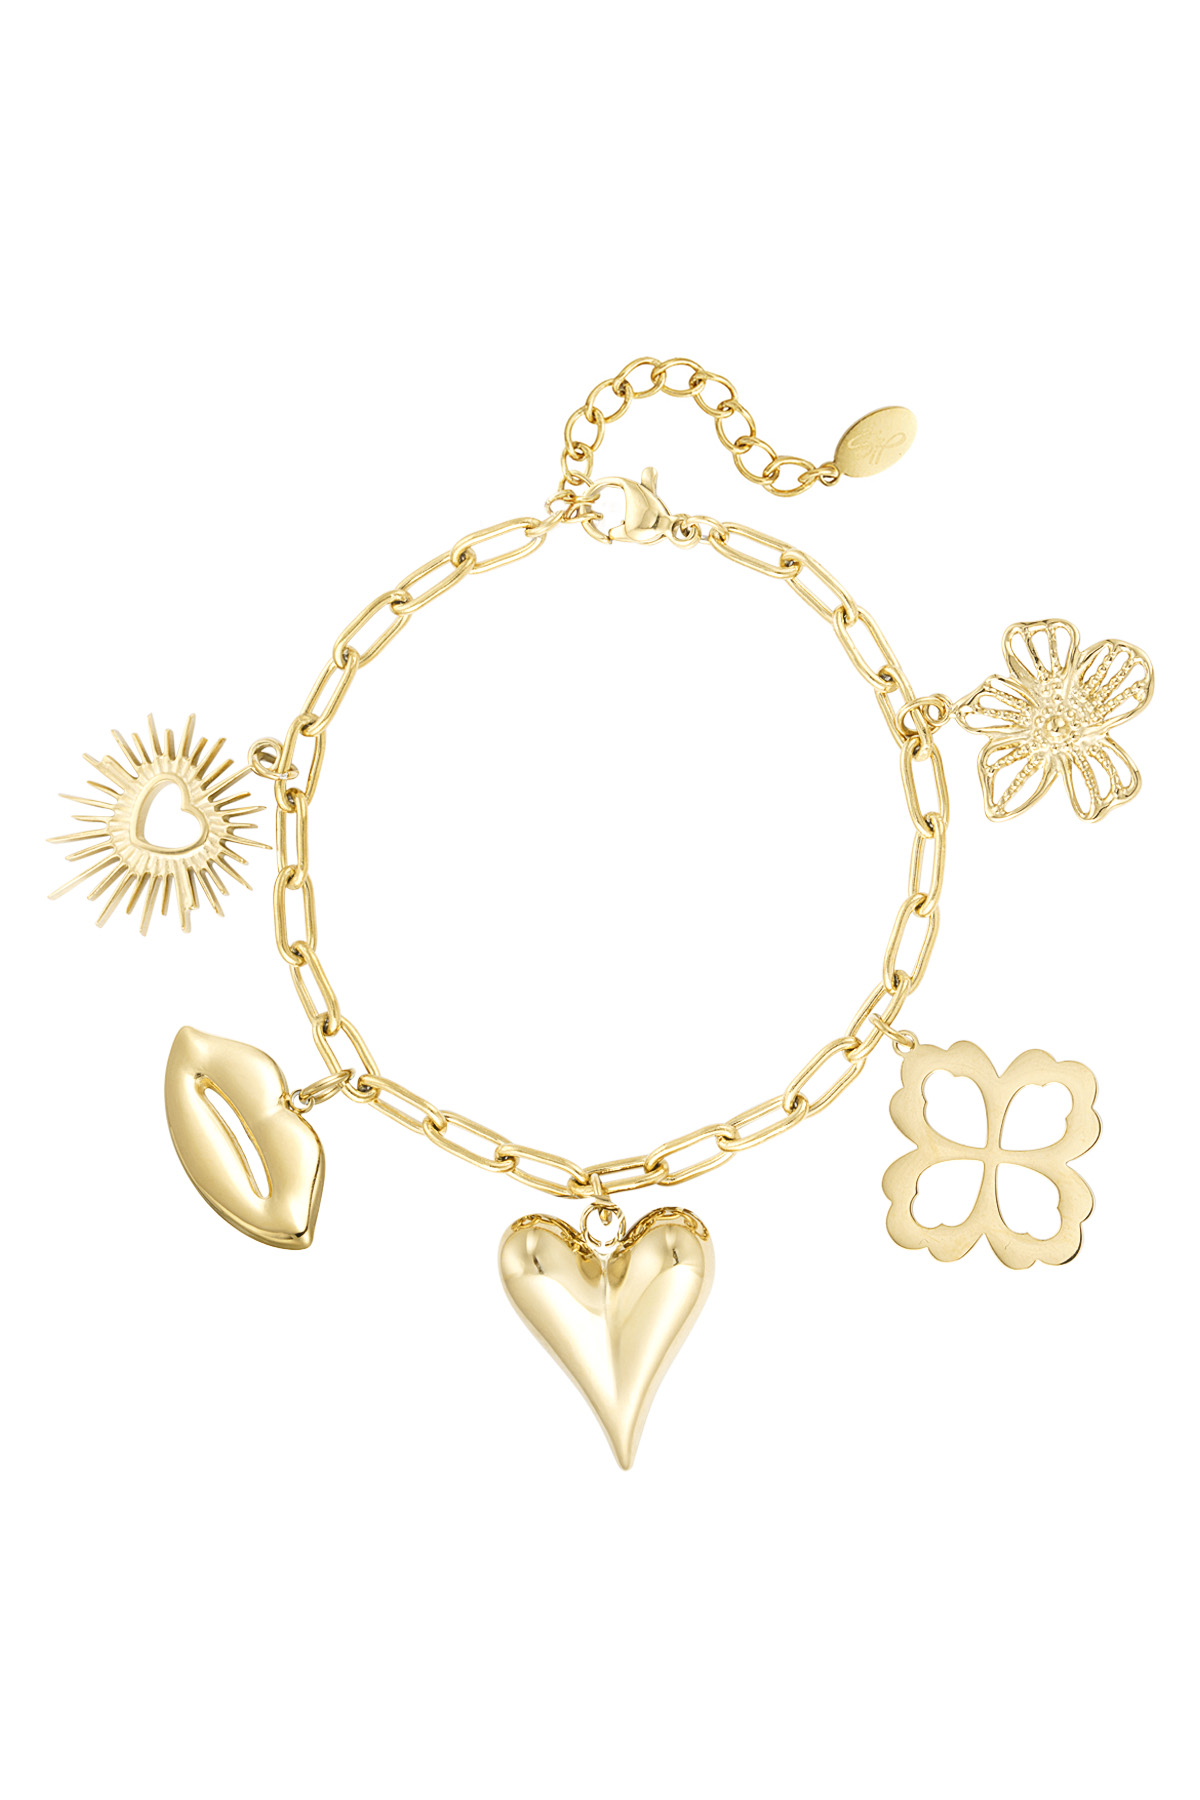 Charm bracelet floral lovers - gold